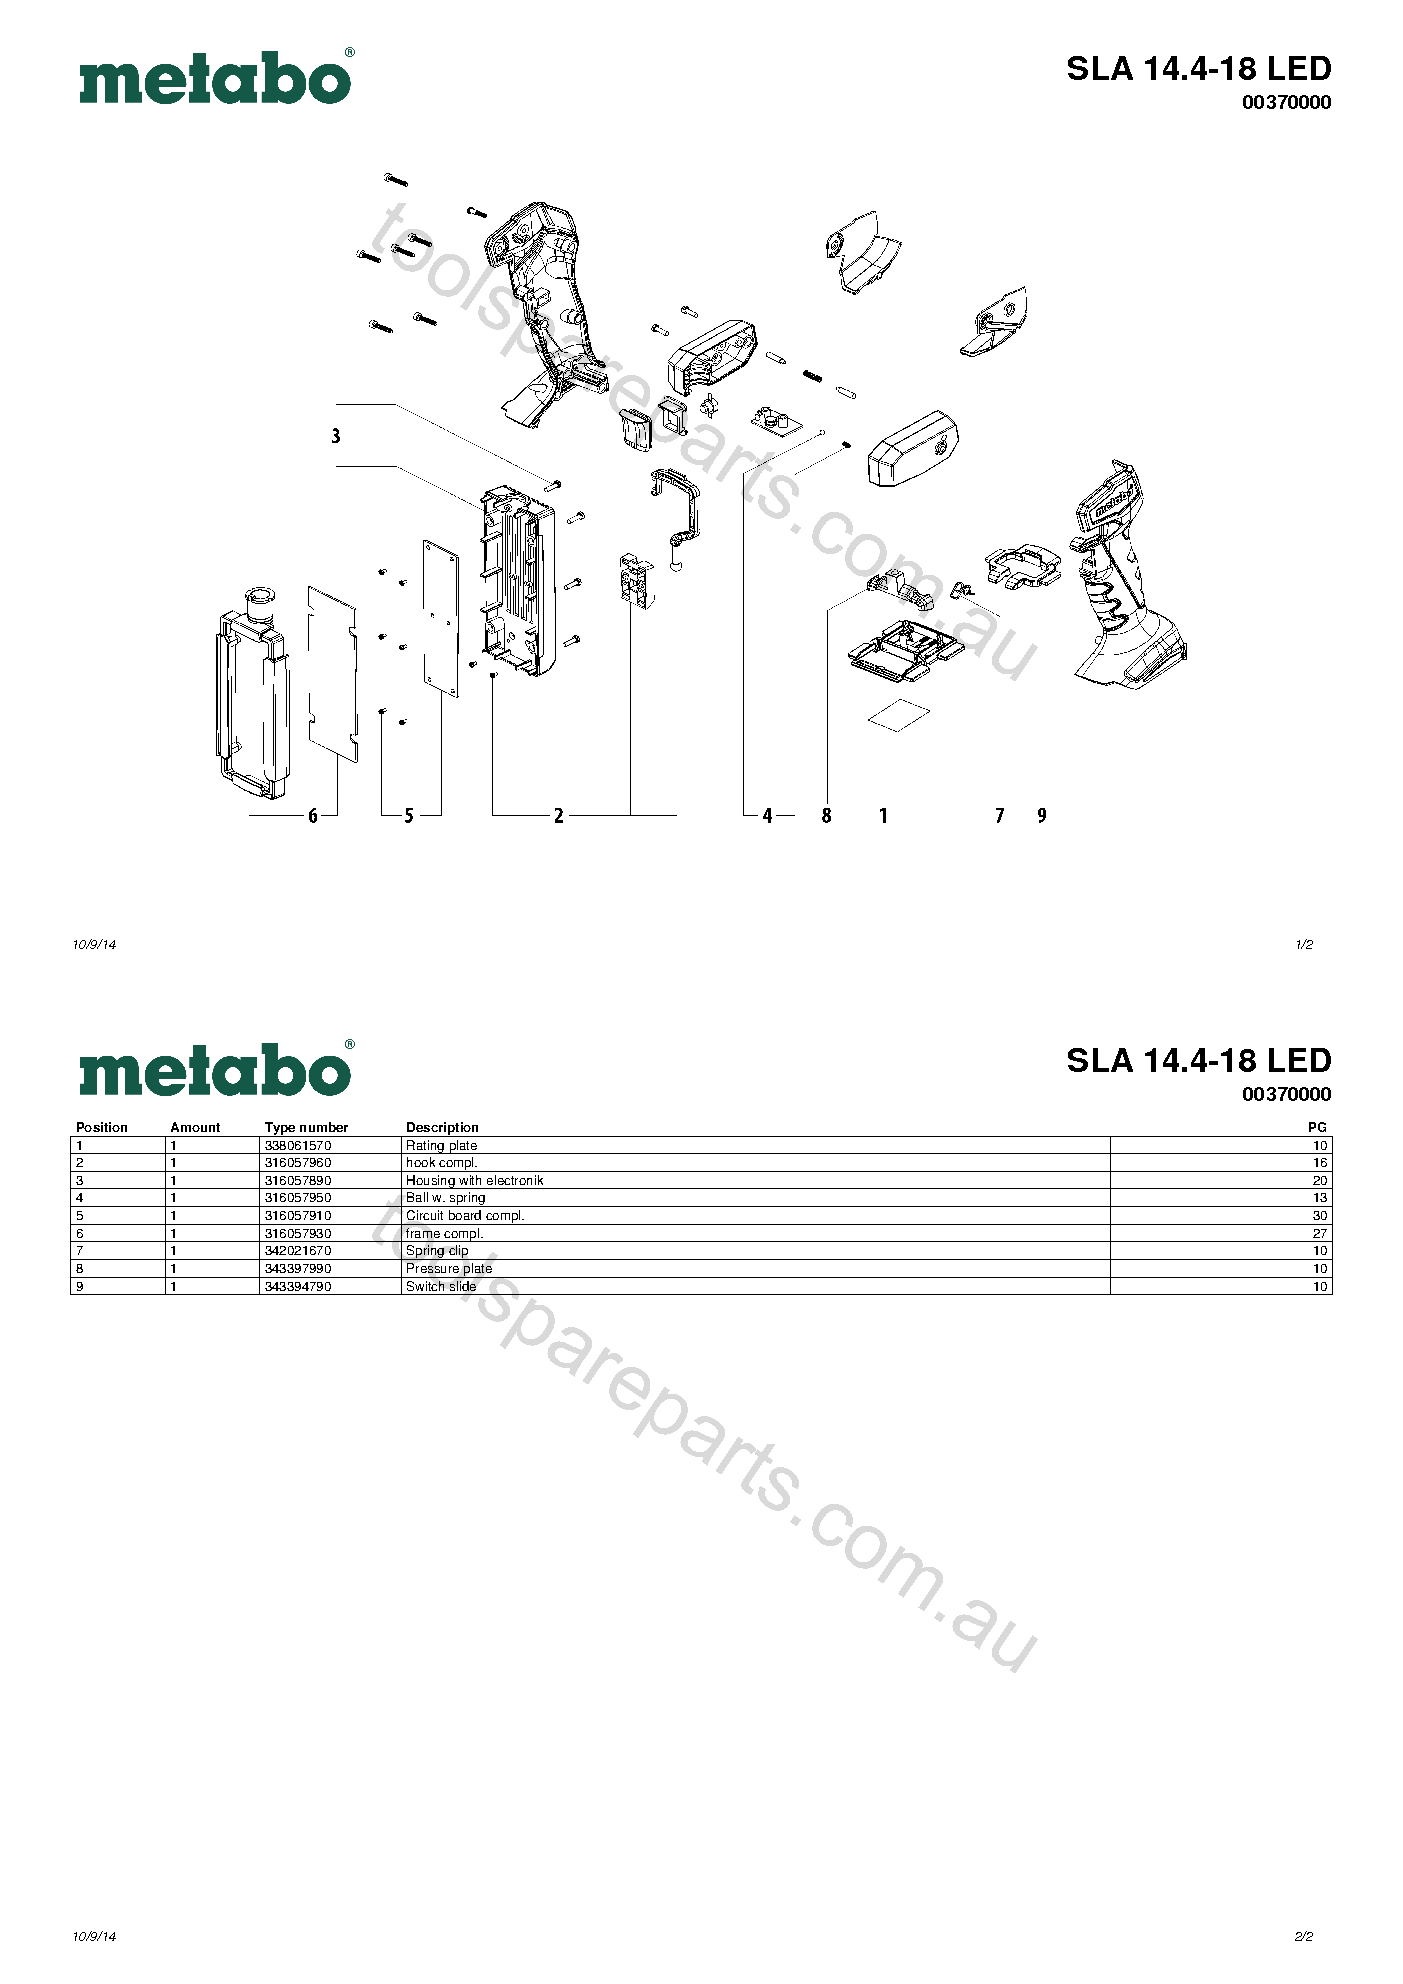 Metabo SLA 14.4-18 LED 00370000  Diagram 1